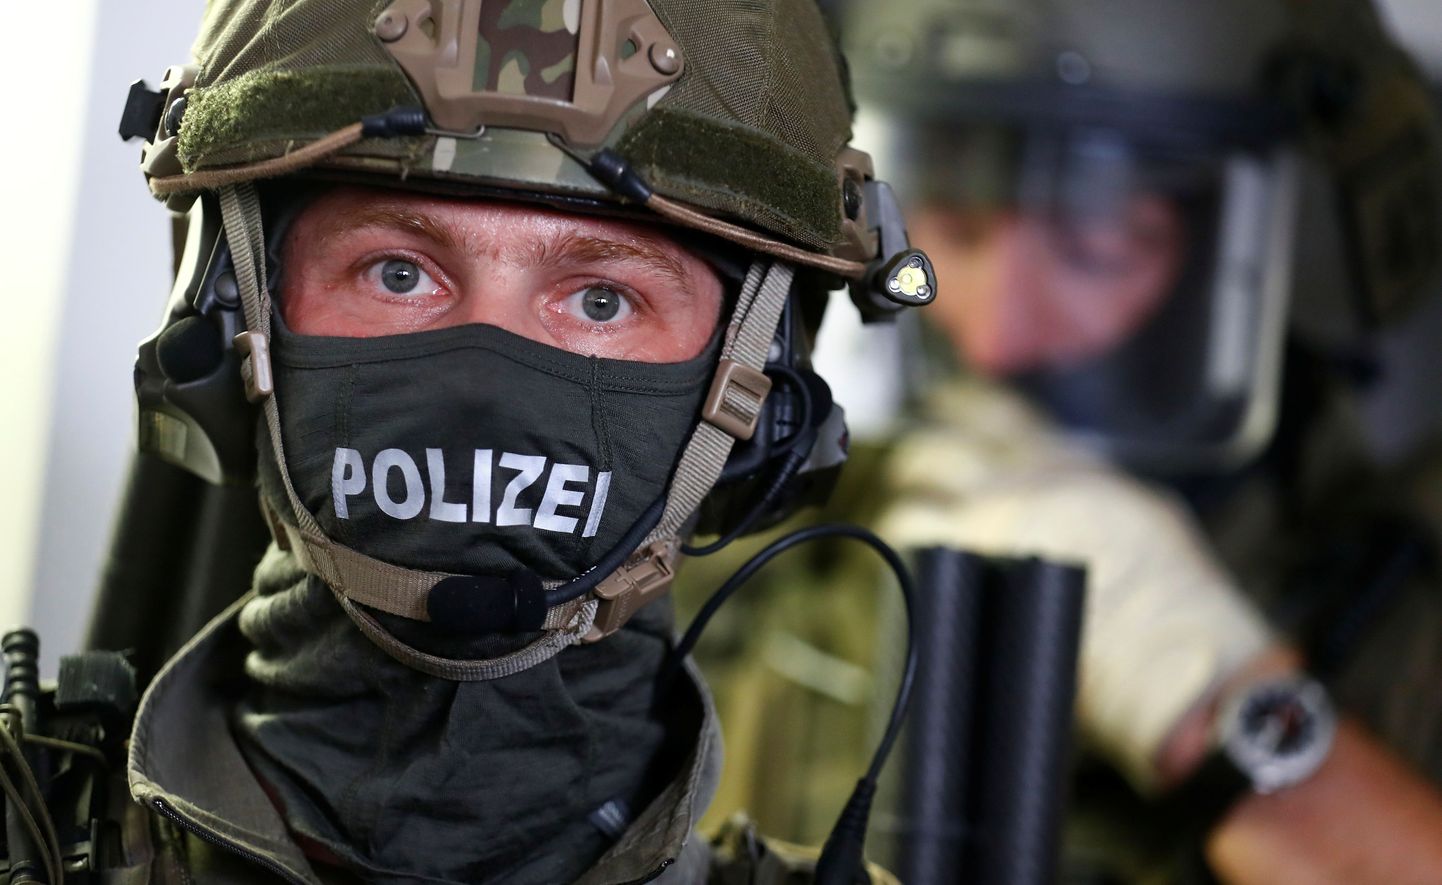 Немецкий полицейский. Снимок иллюстративный.